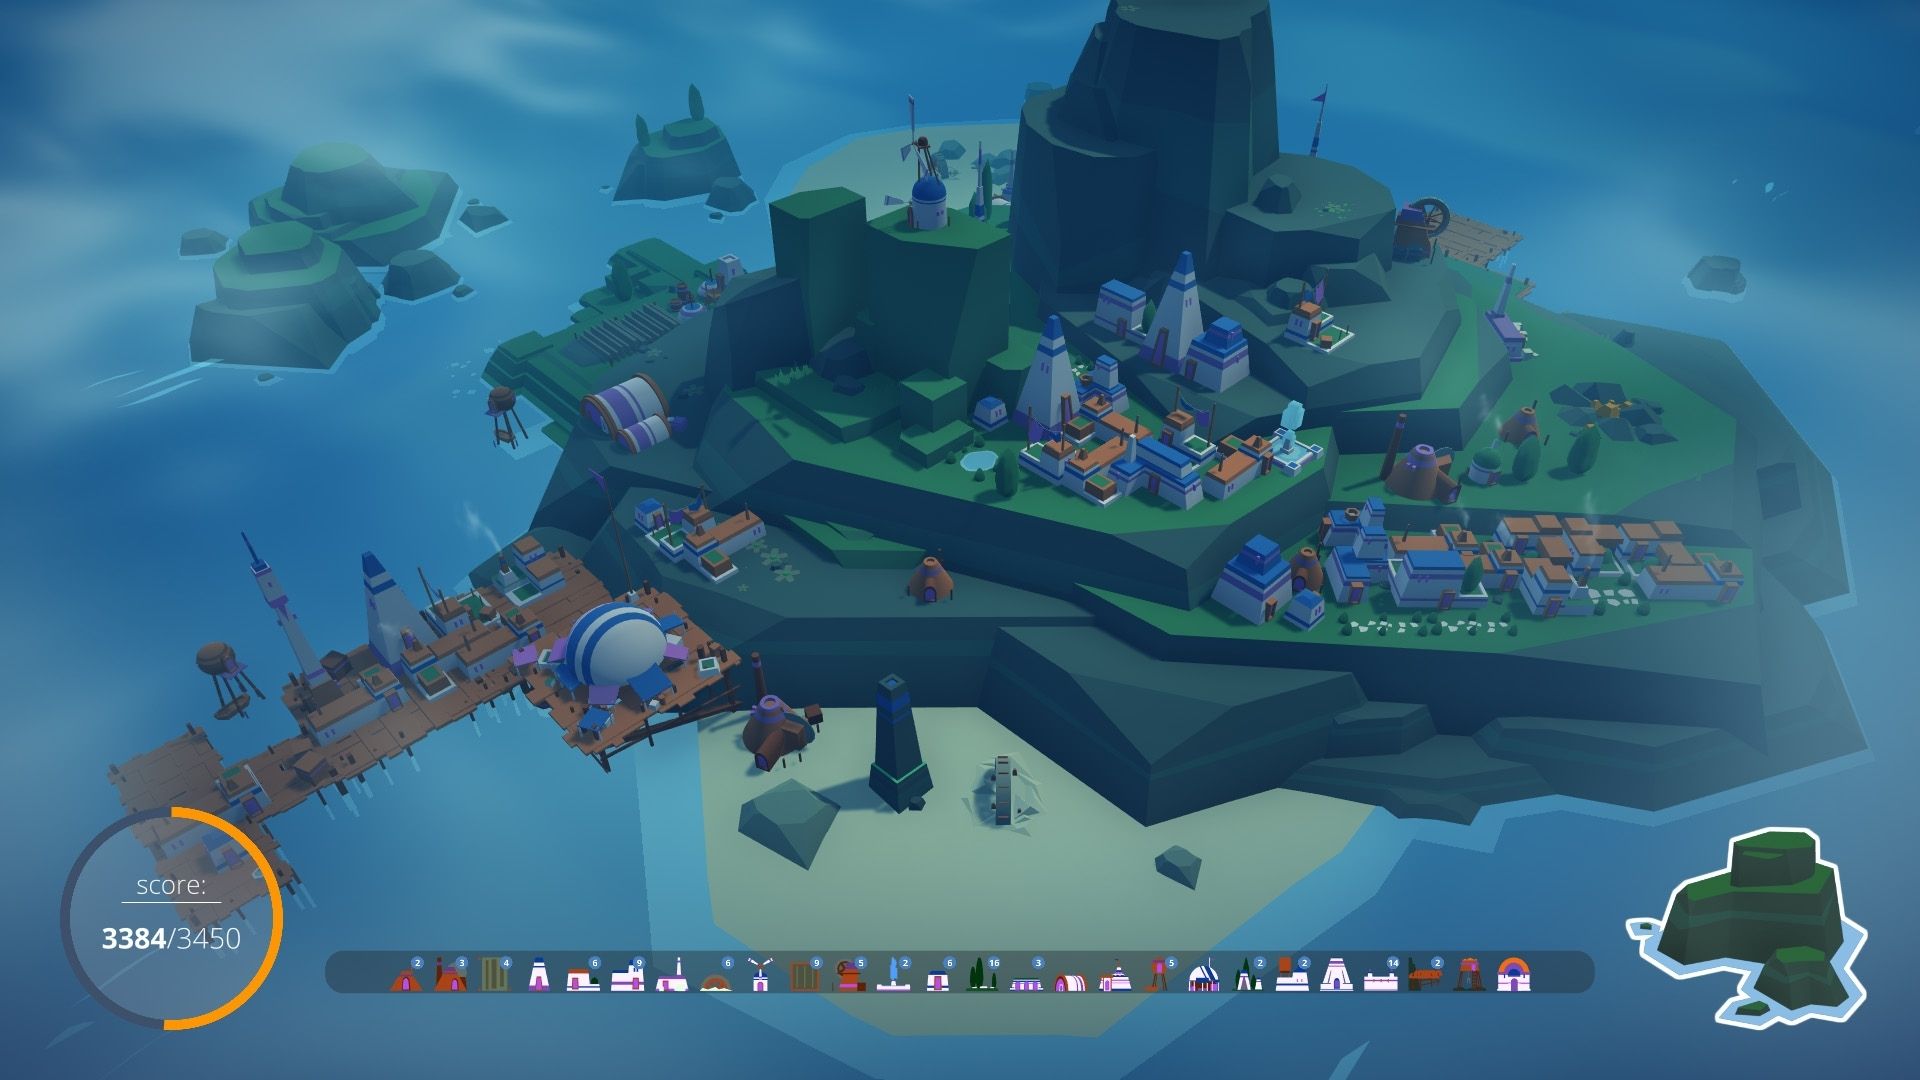 צילום מסך של תושבי האי, מציג אי גדול עם כמה בתים ונמל